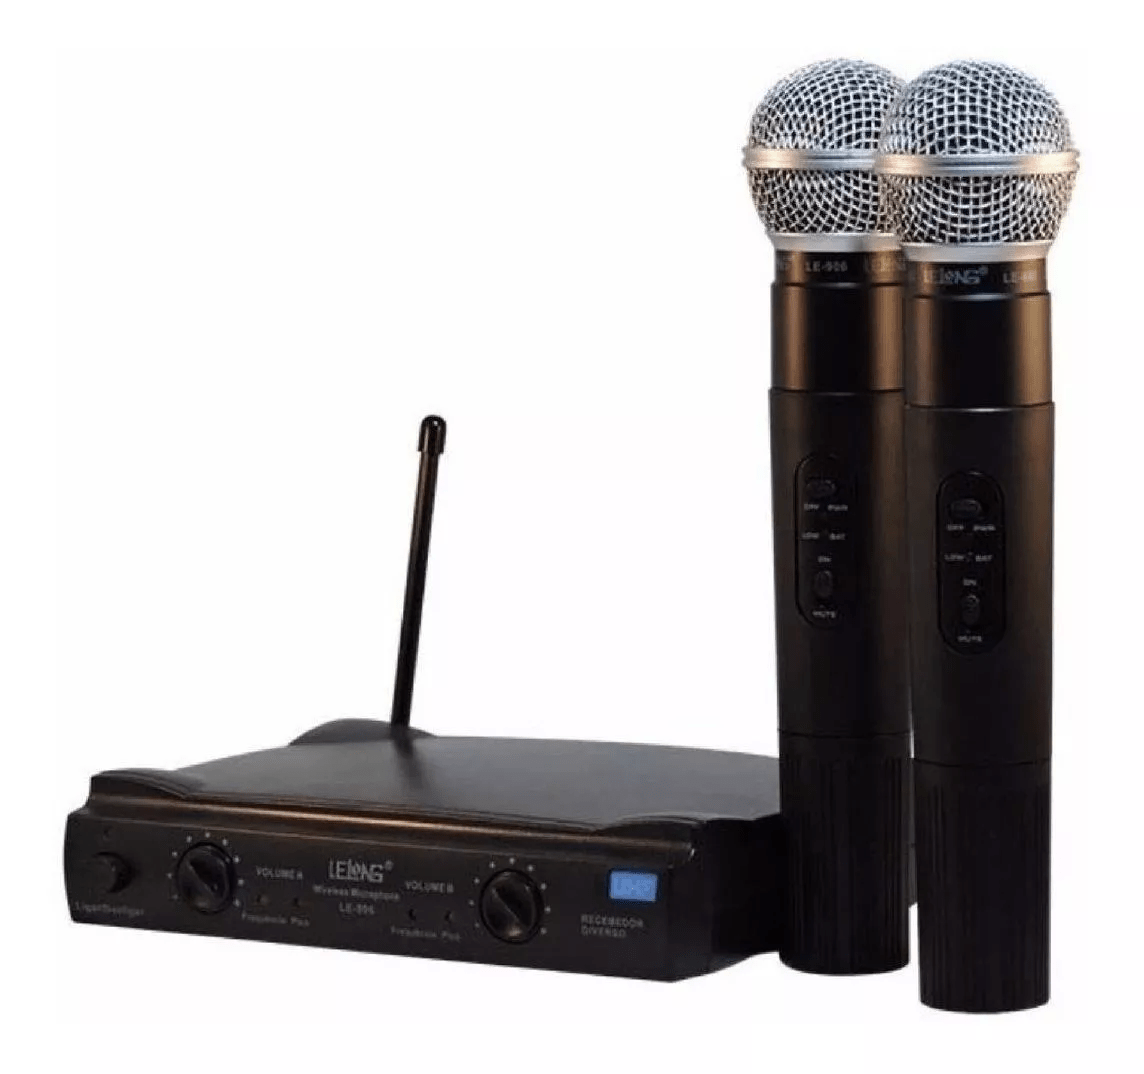 Kit de microfones Lelong LE-906 dinâmico